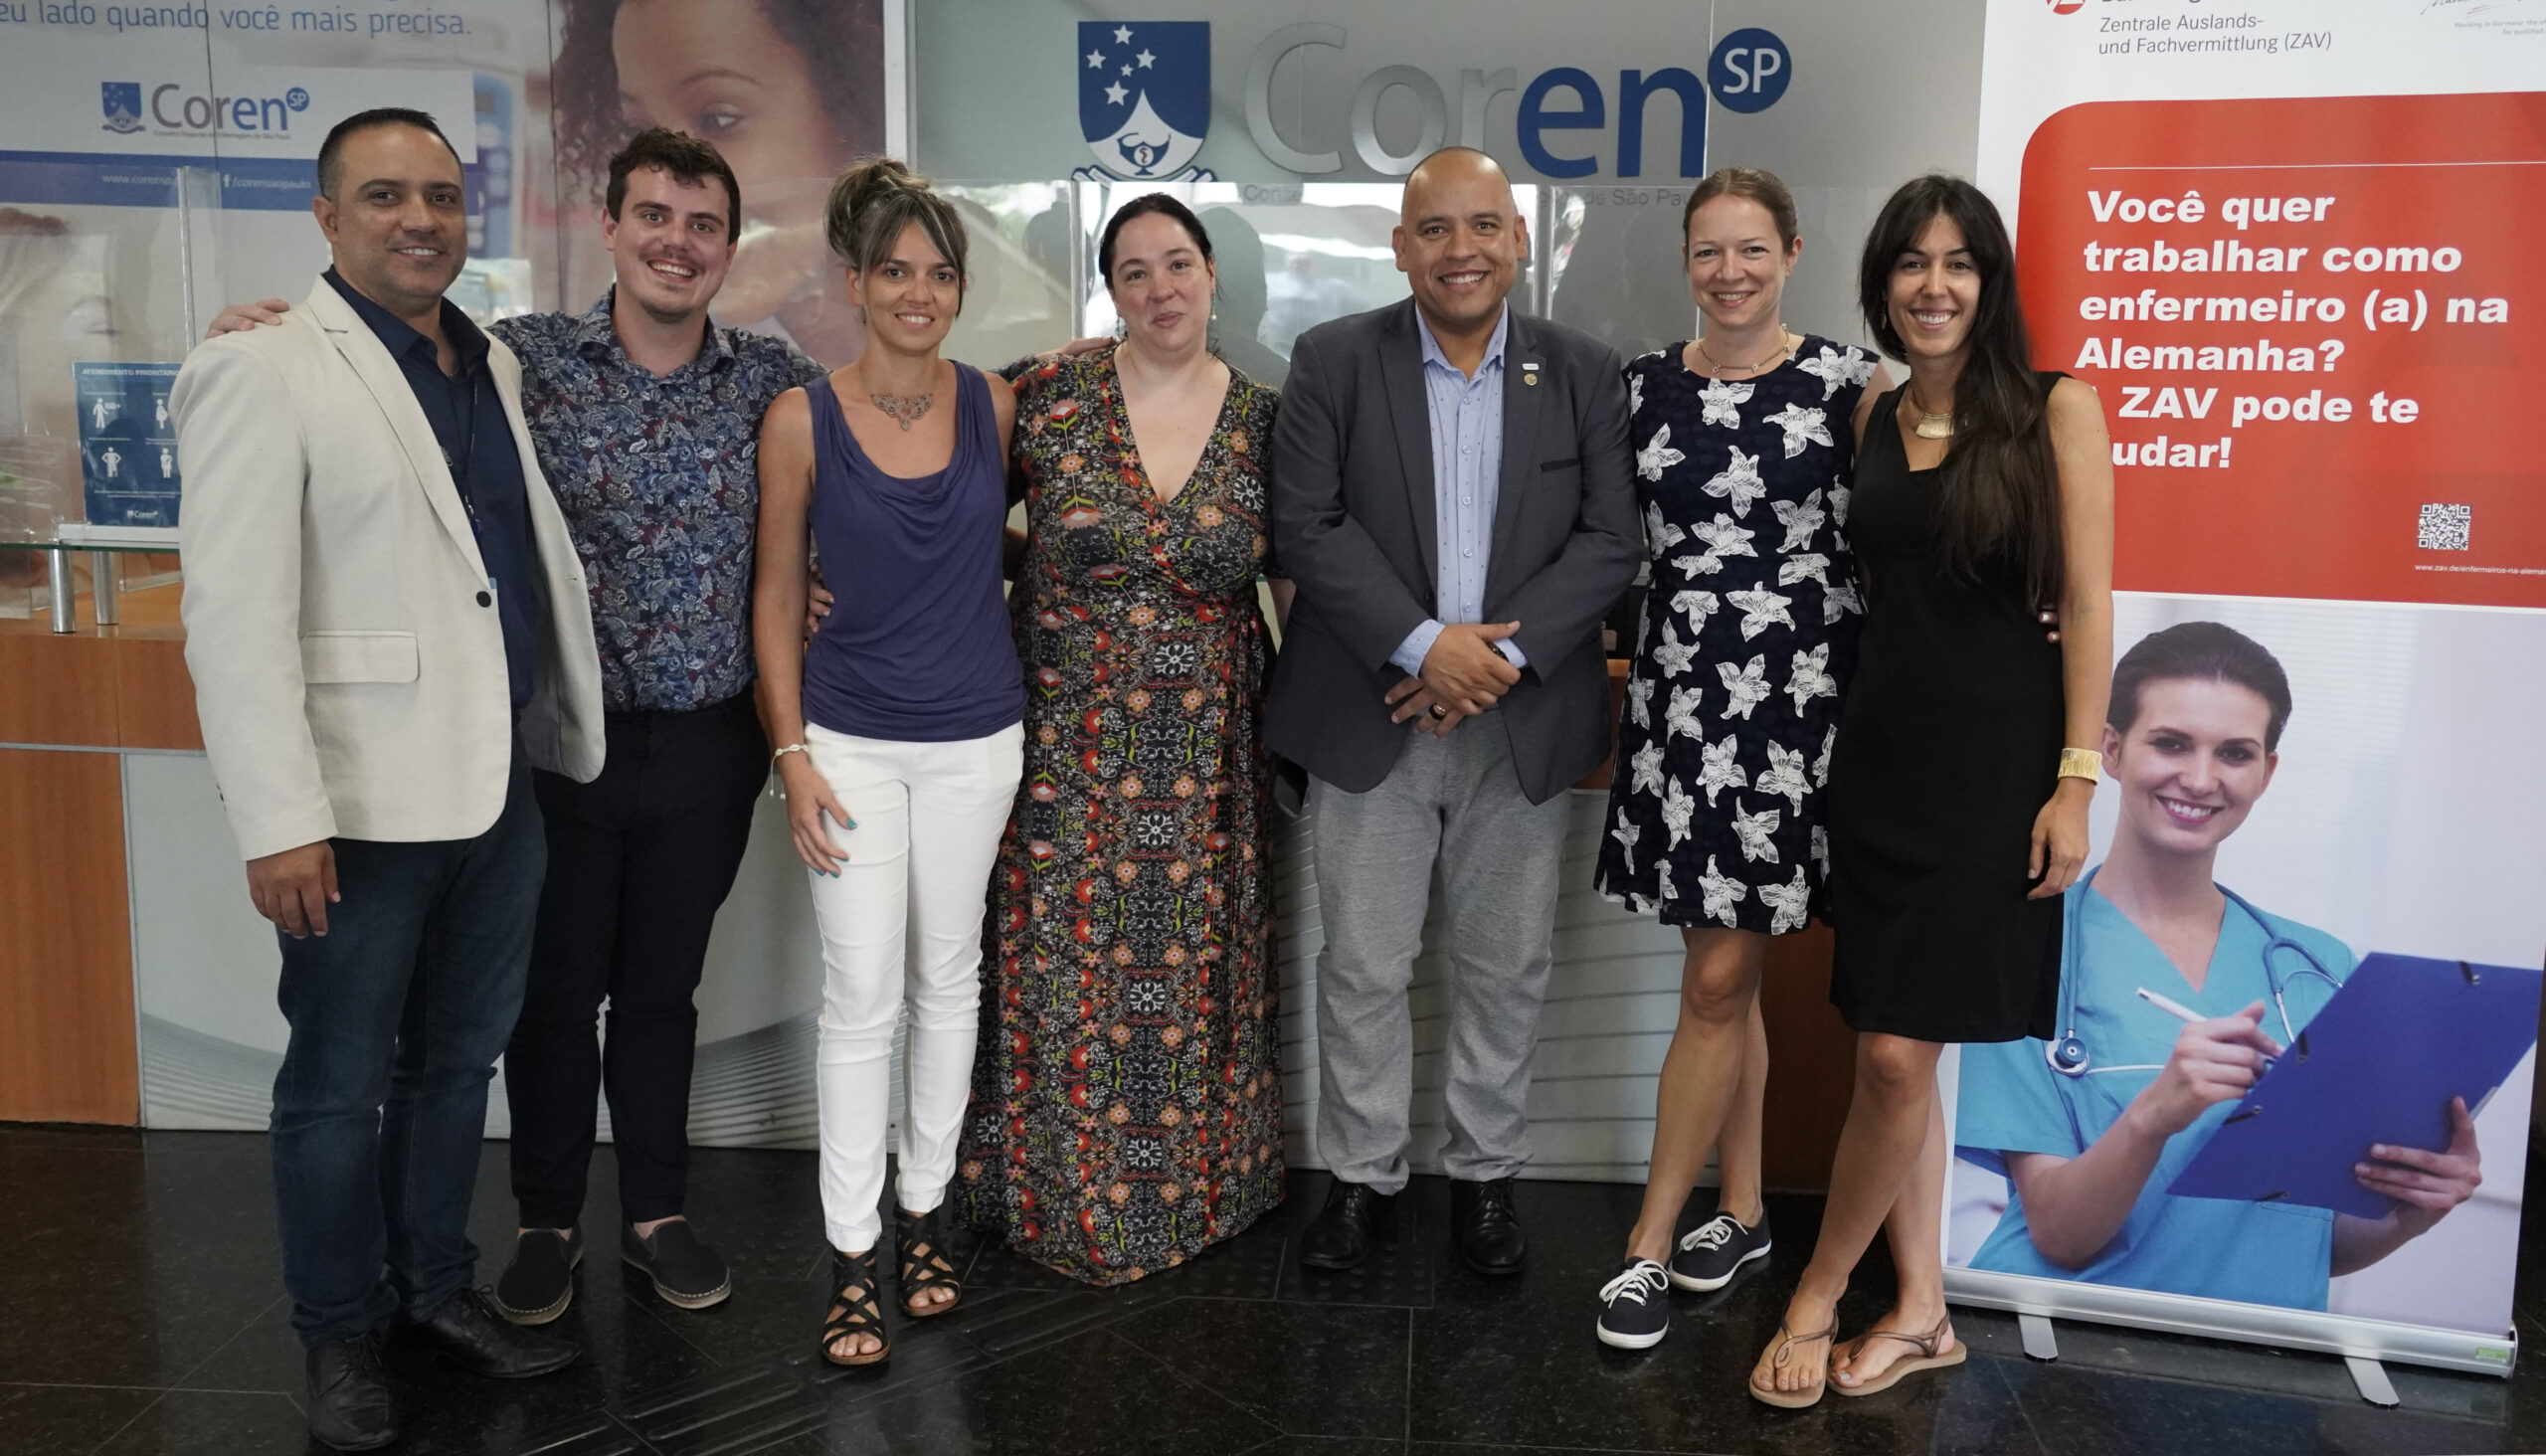 Coron-SP beteiligt sich an der Rekrutierung von brasilianischen Pflegekräften für Deutschland